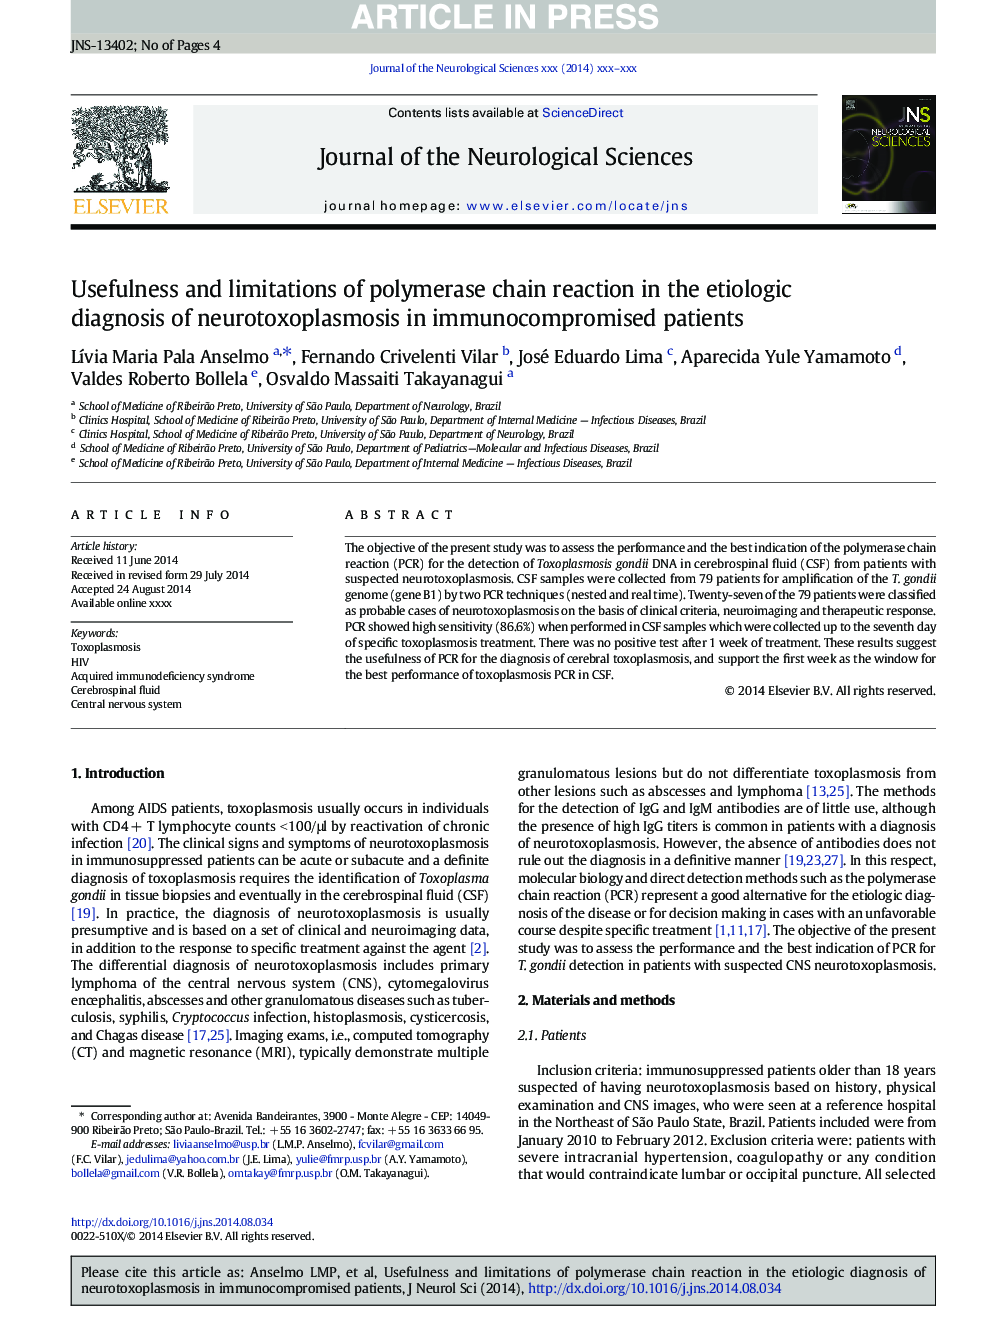 مفید بودن و محدودیت واکنش زنجیره ای پلیمریزاسیون در تشخیص اتیولوژی نوروکتوکاسپلاسموز در بیماران مبتلا به ایمن 